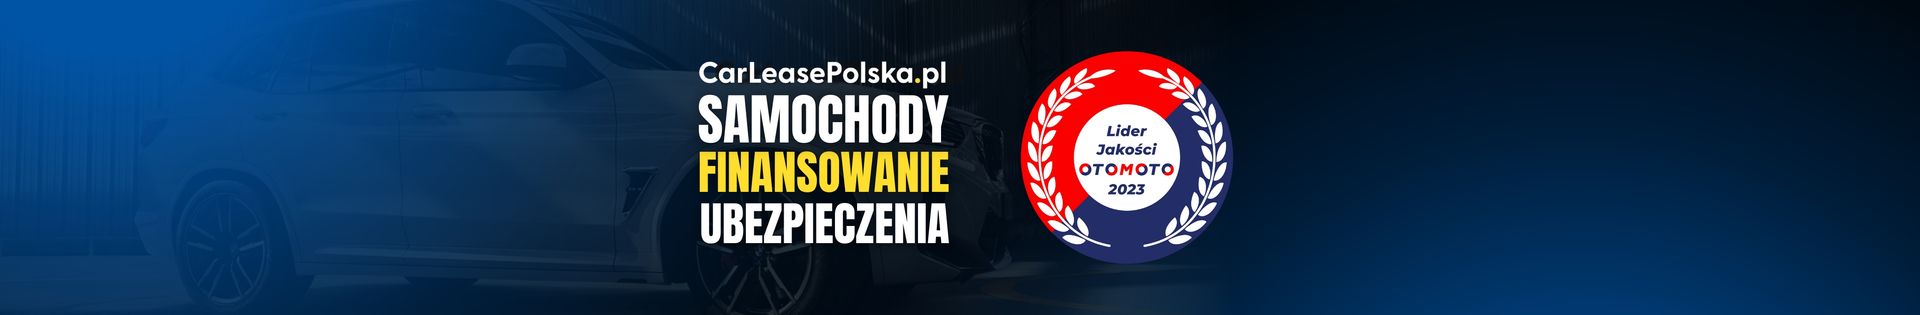 CarLeasePolska.pl - Samochody Finansowanie Ubezpieczenia top banner